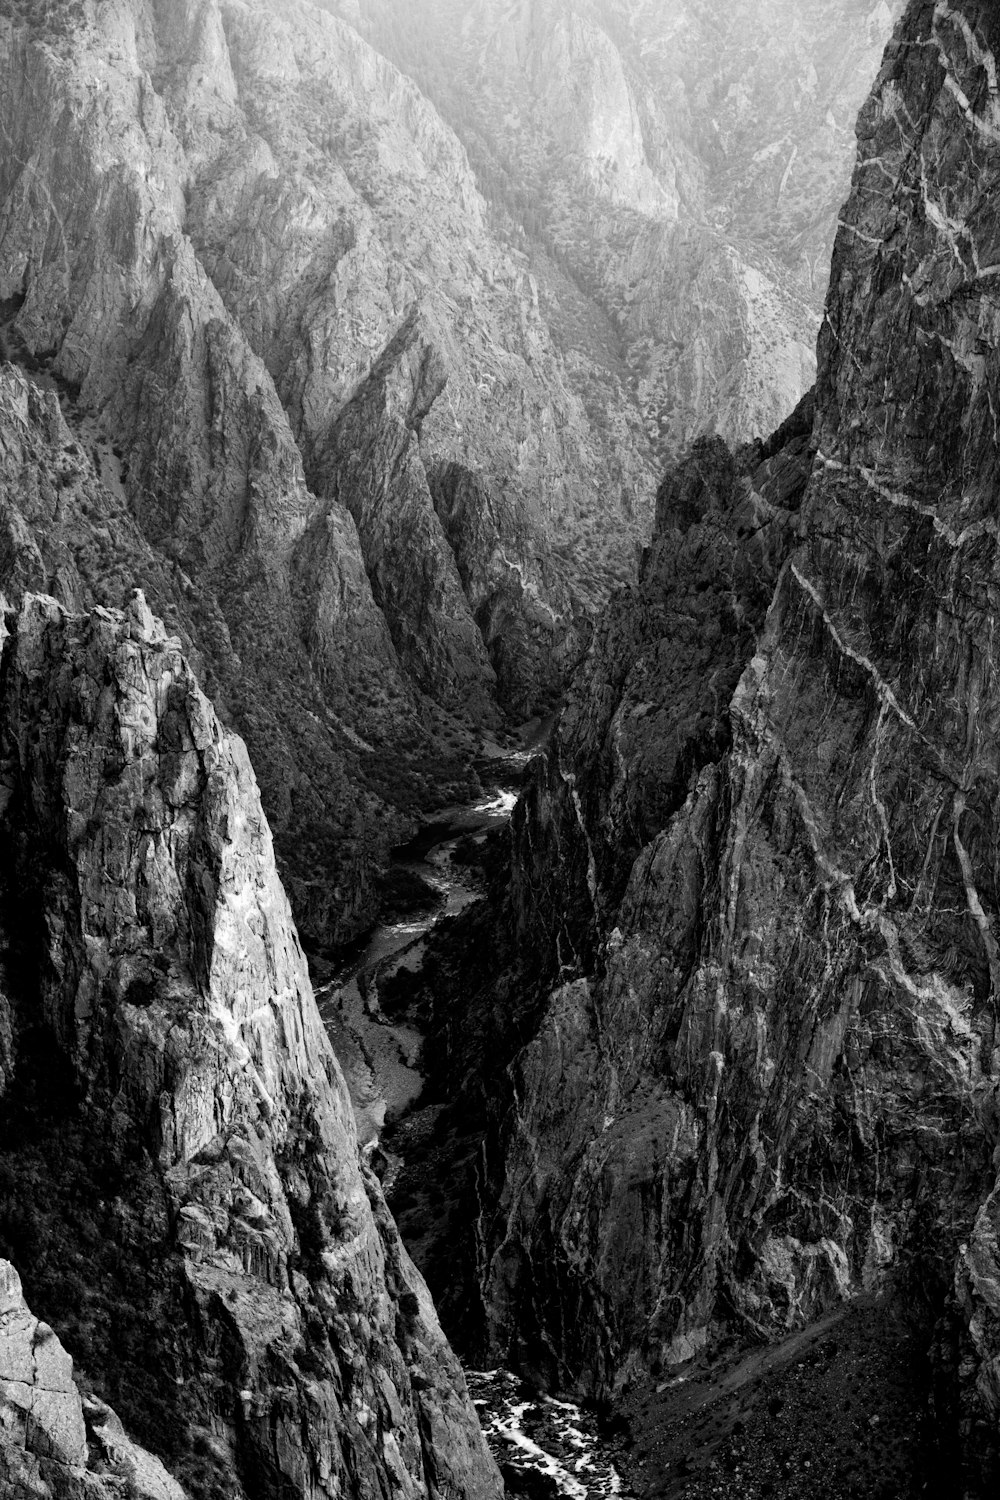 fotografia in scala di grigi delle montagne